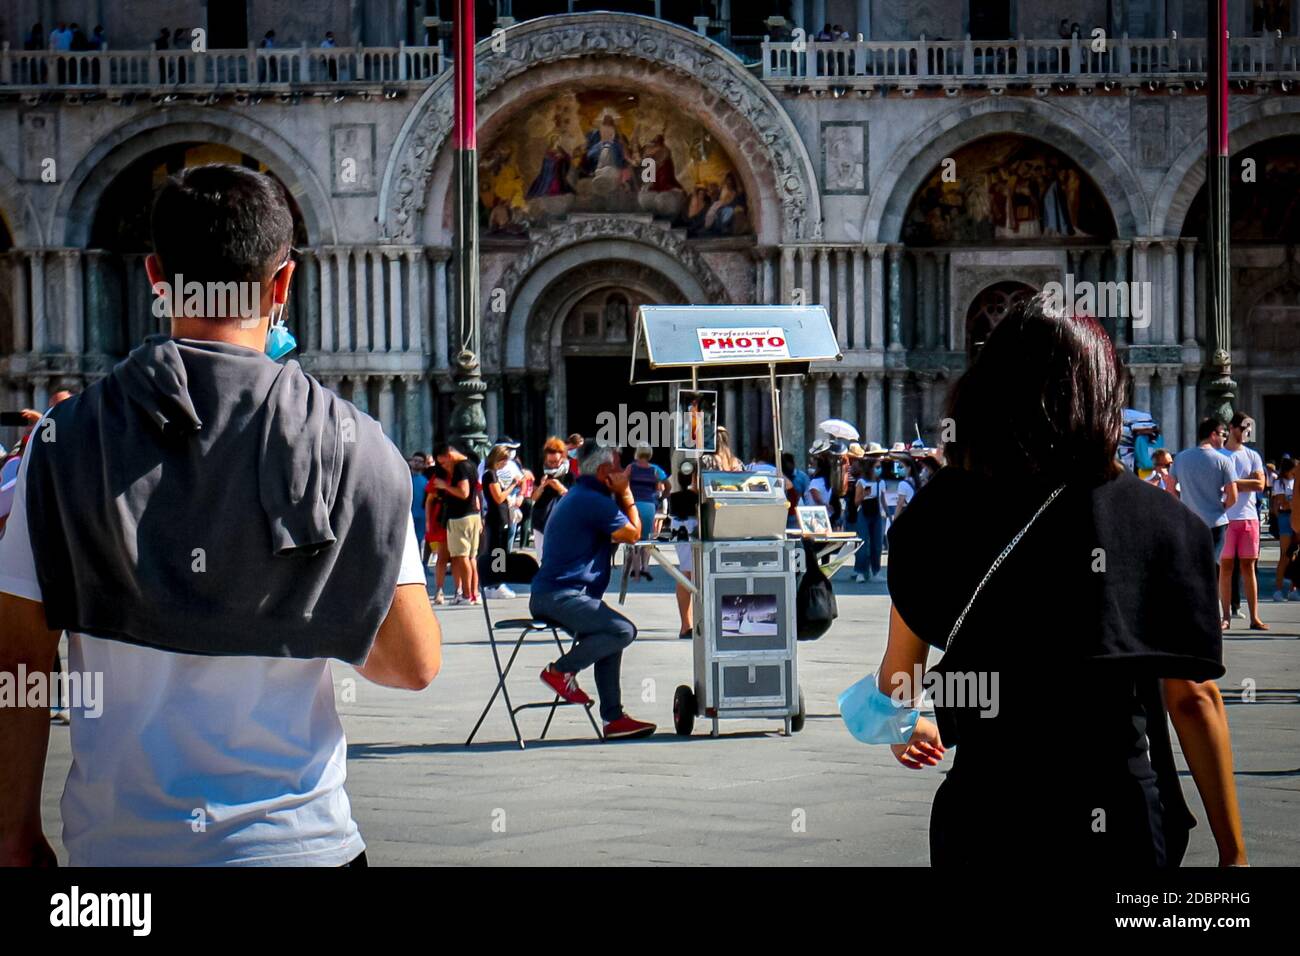 Les touristes de Venise avec des masques chirurgicaux marchent vers la basilique Saint-Marc et un homme vendant des photographies professionnelles pendant la crise du coronavirus en Italie. Banque D'Images